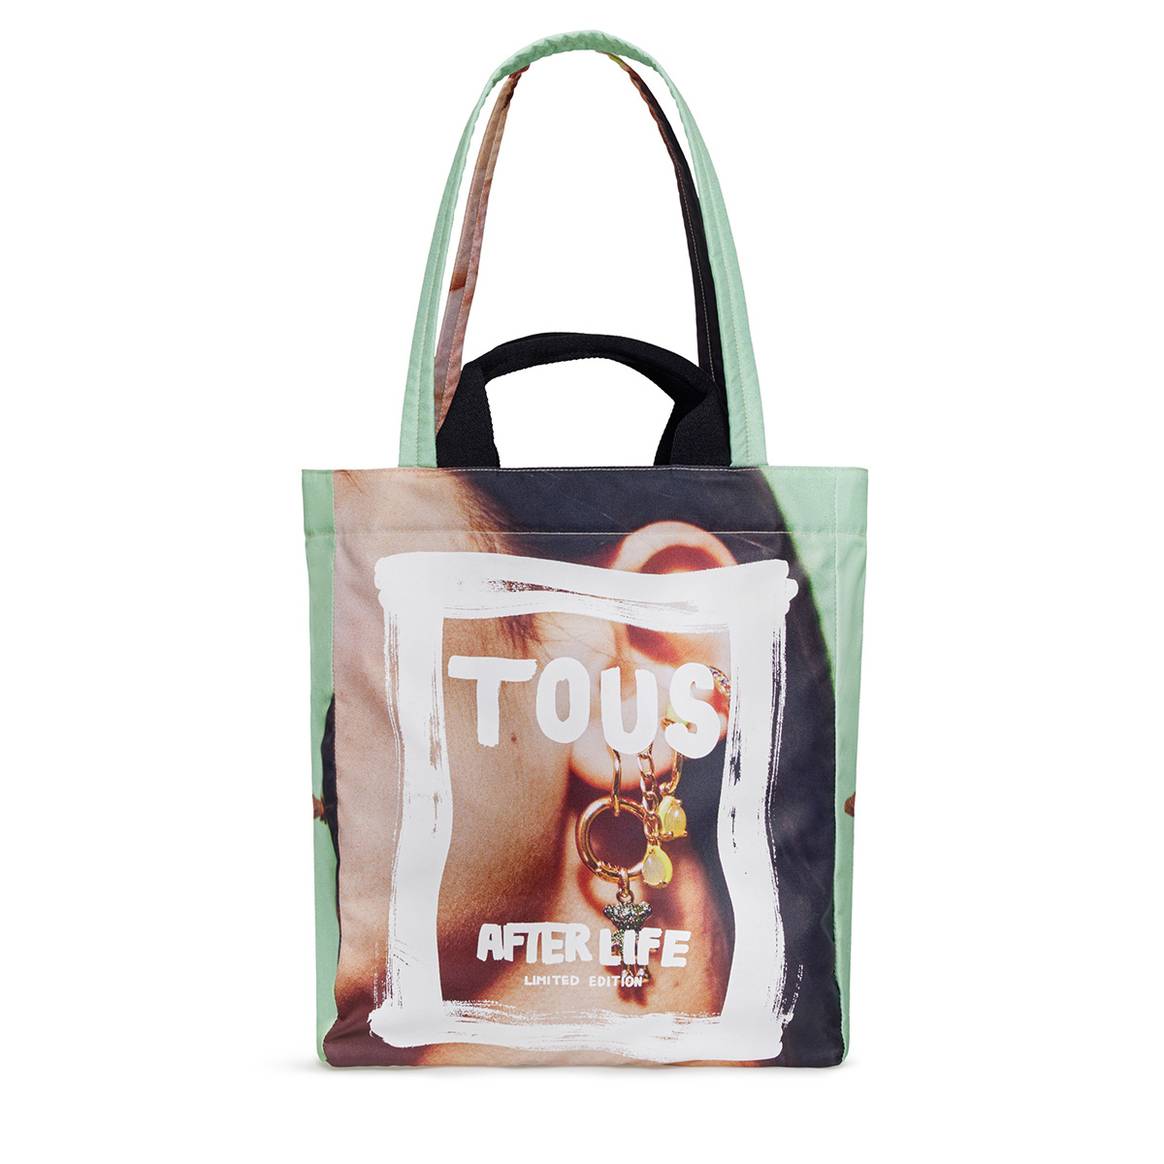 Diseño de bolso de la colección “Tous Afterlife” confeccionada a partir de lonas y de elementos de campañas publicitarias de Tous.